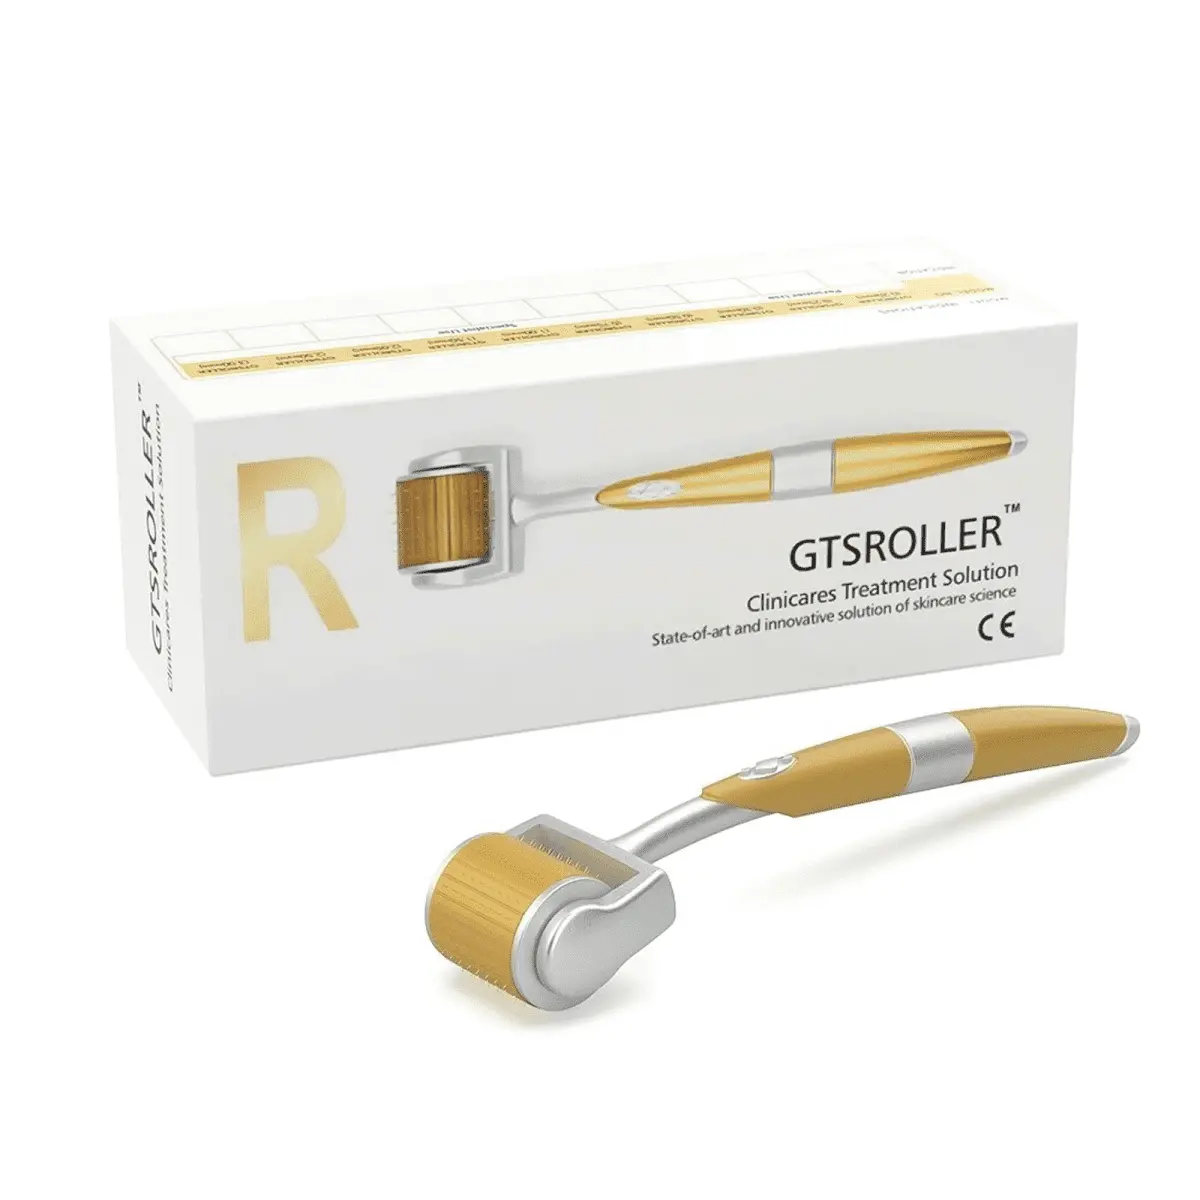 Derma Roller Gold 1 Mm Enhances Cellular Renewal